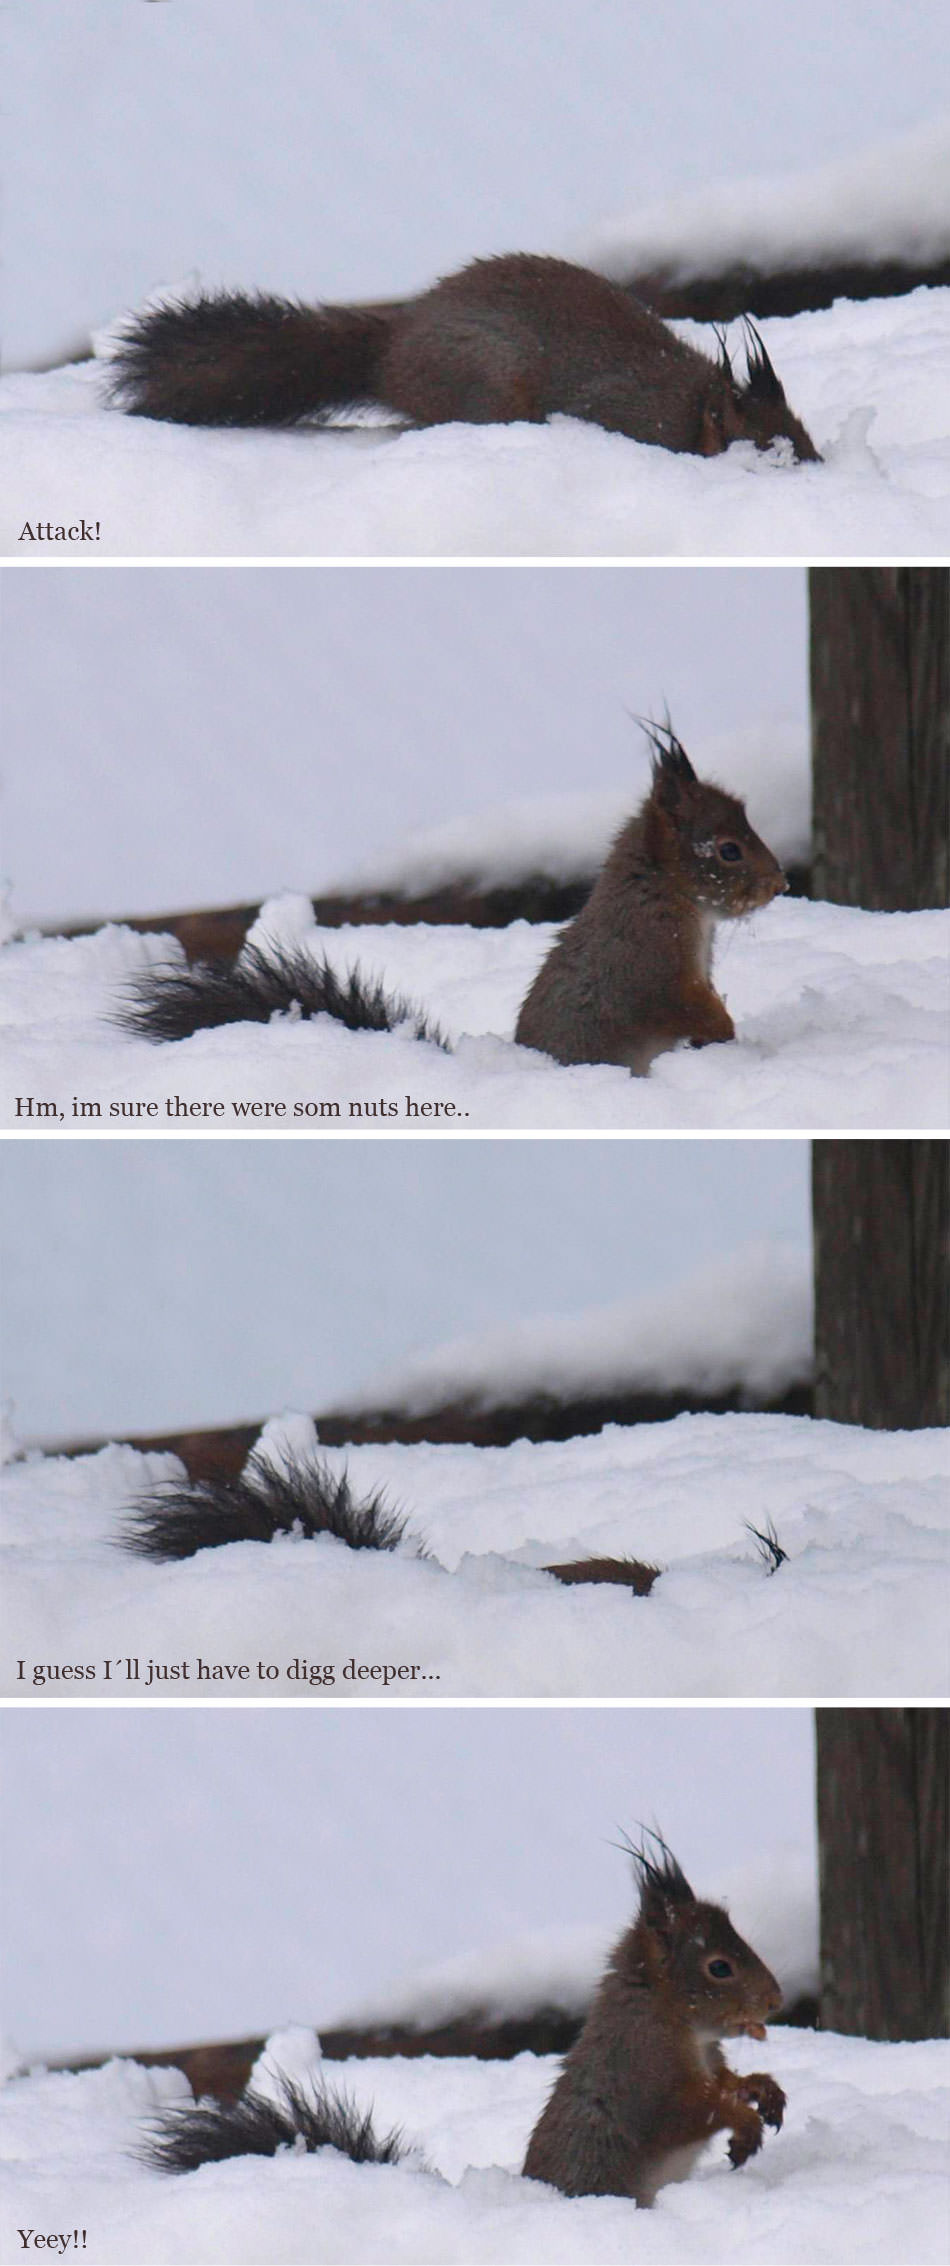 ekorn jakter i snøen - serie